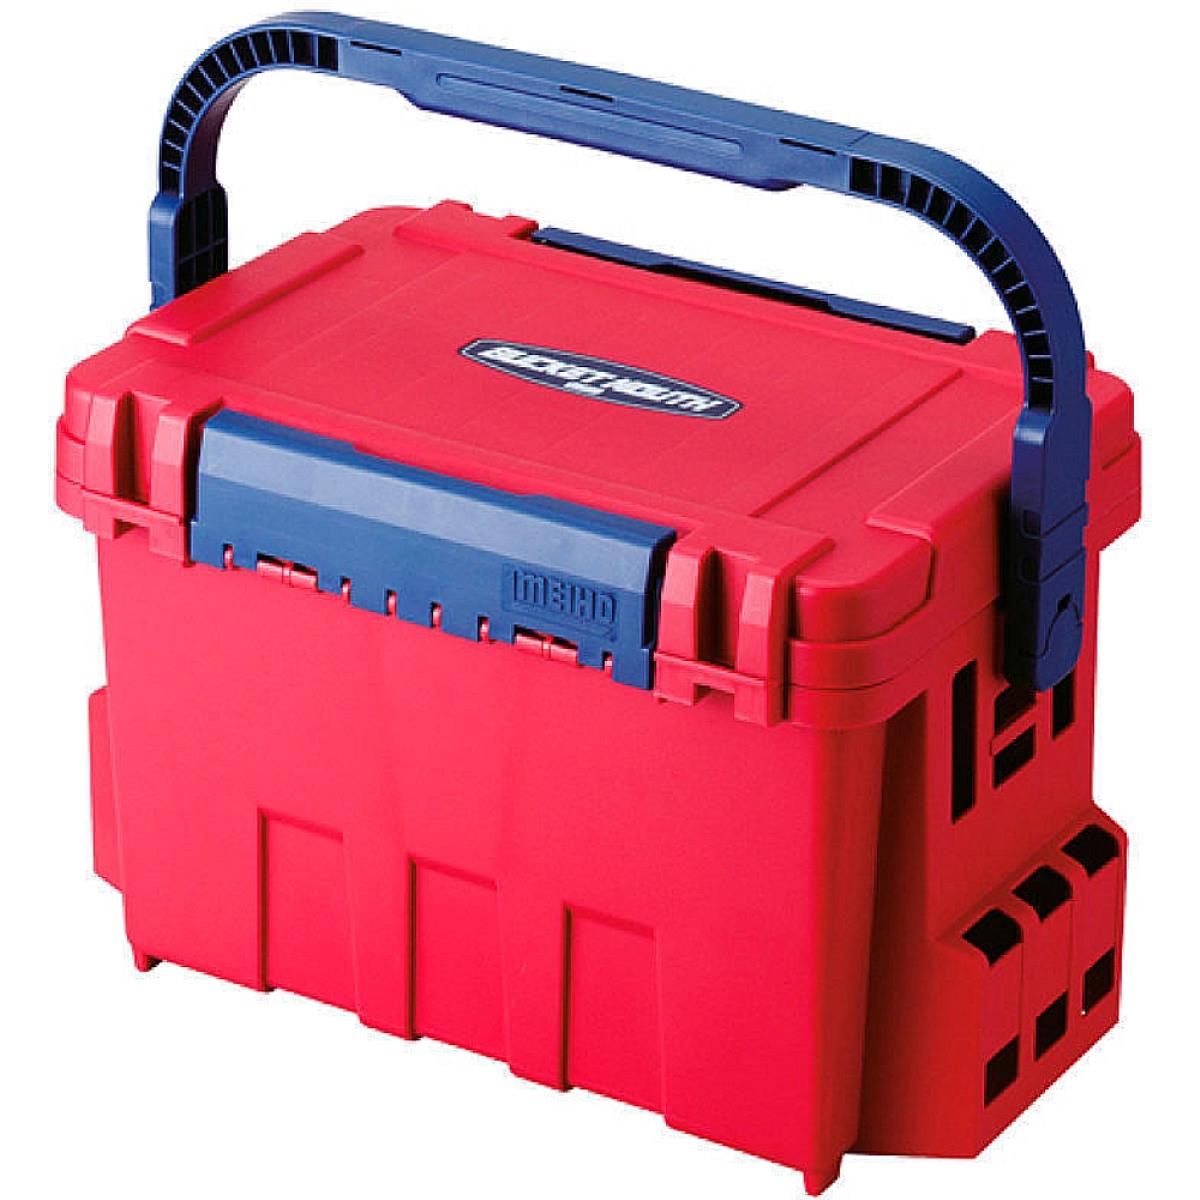 Ящик рыболовный BUCKET MOUTH BM-9000 Red 540x340x350 (BM-9000-R) Meiho растворный ящик topex